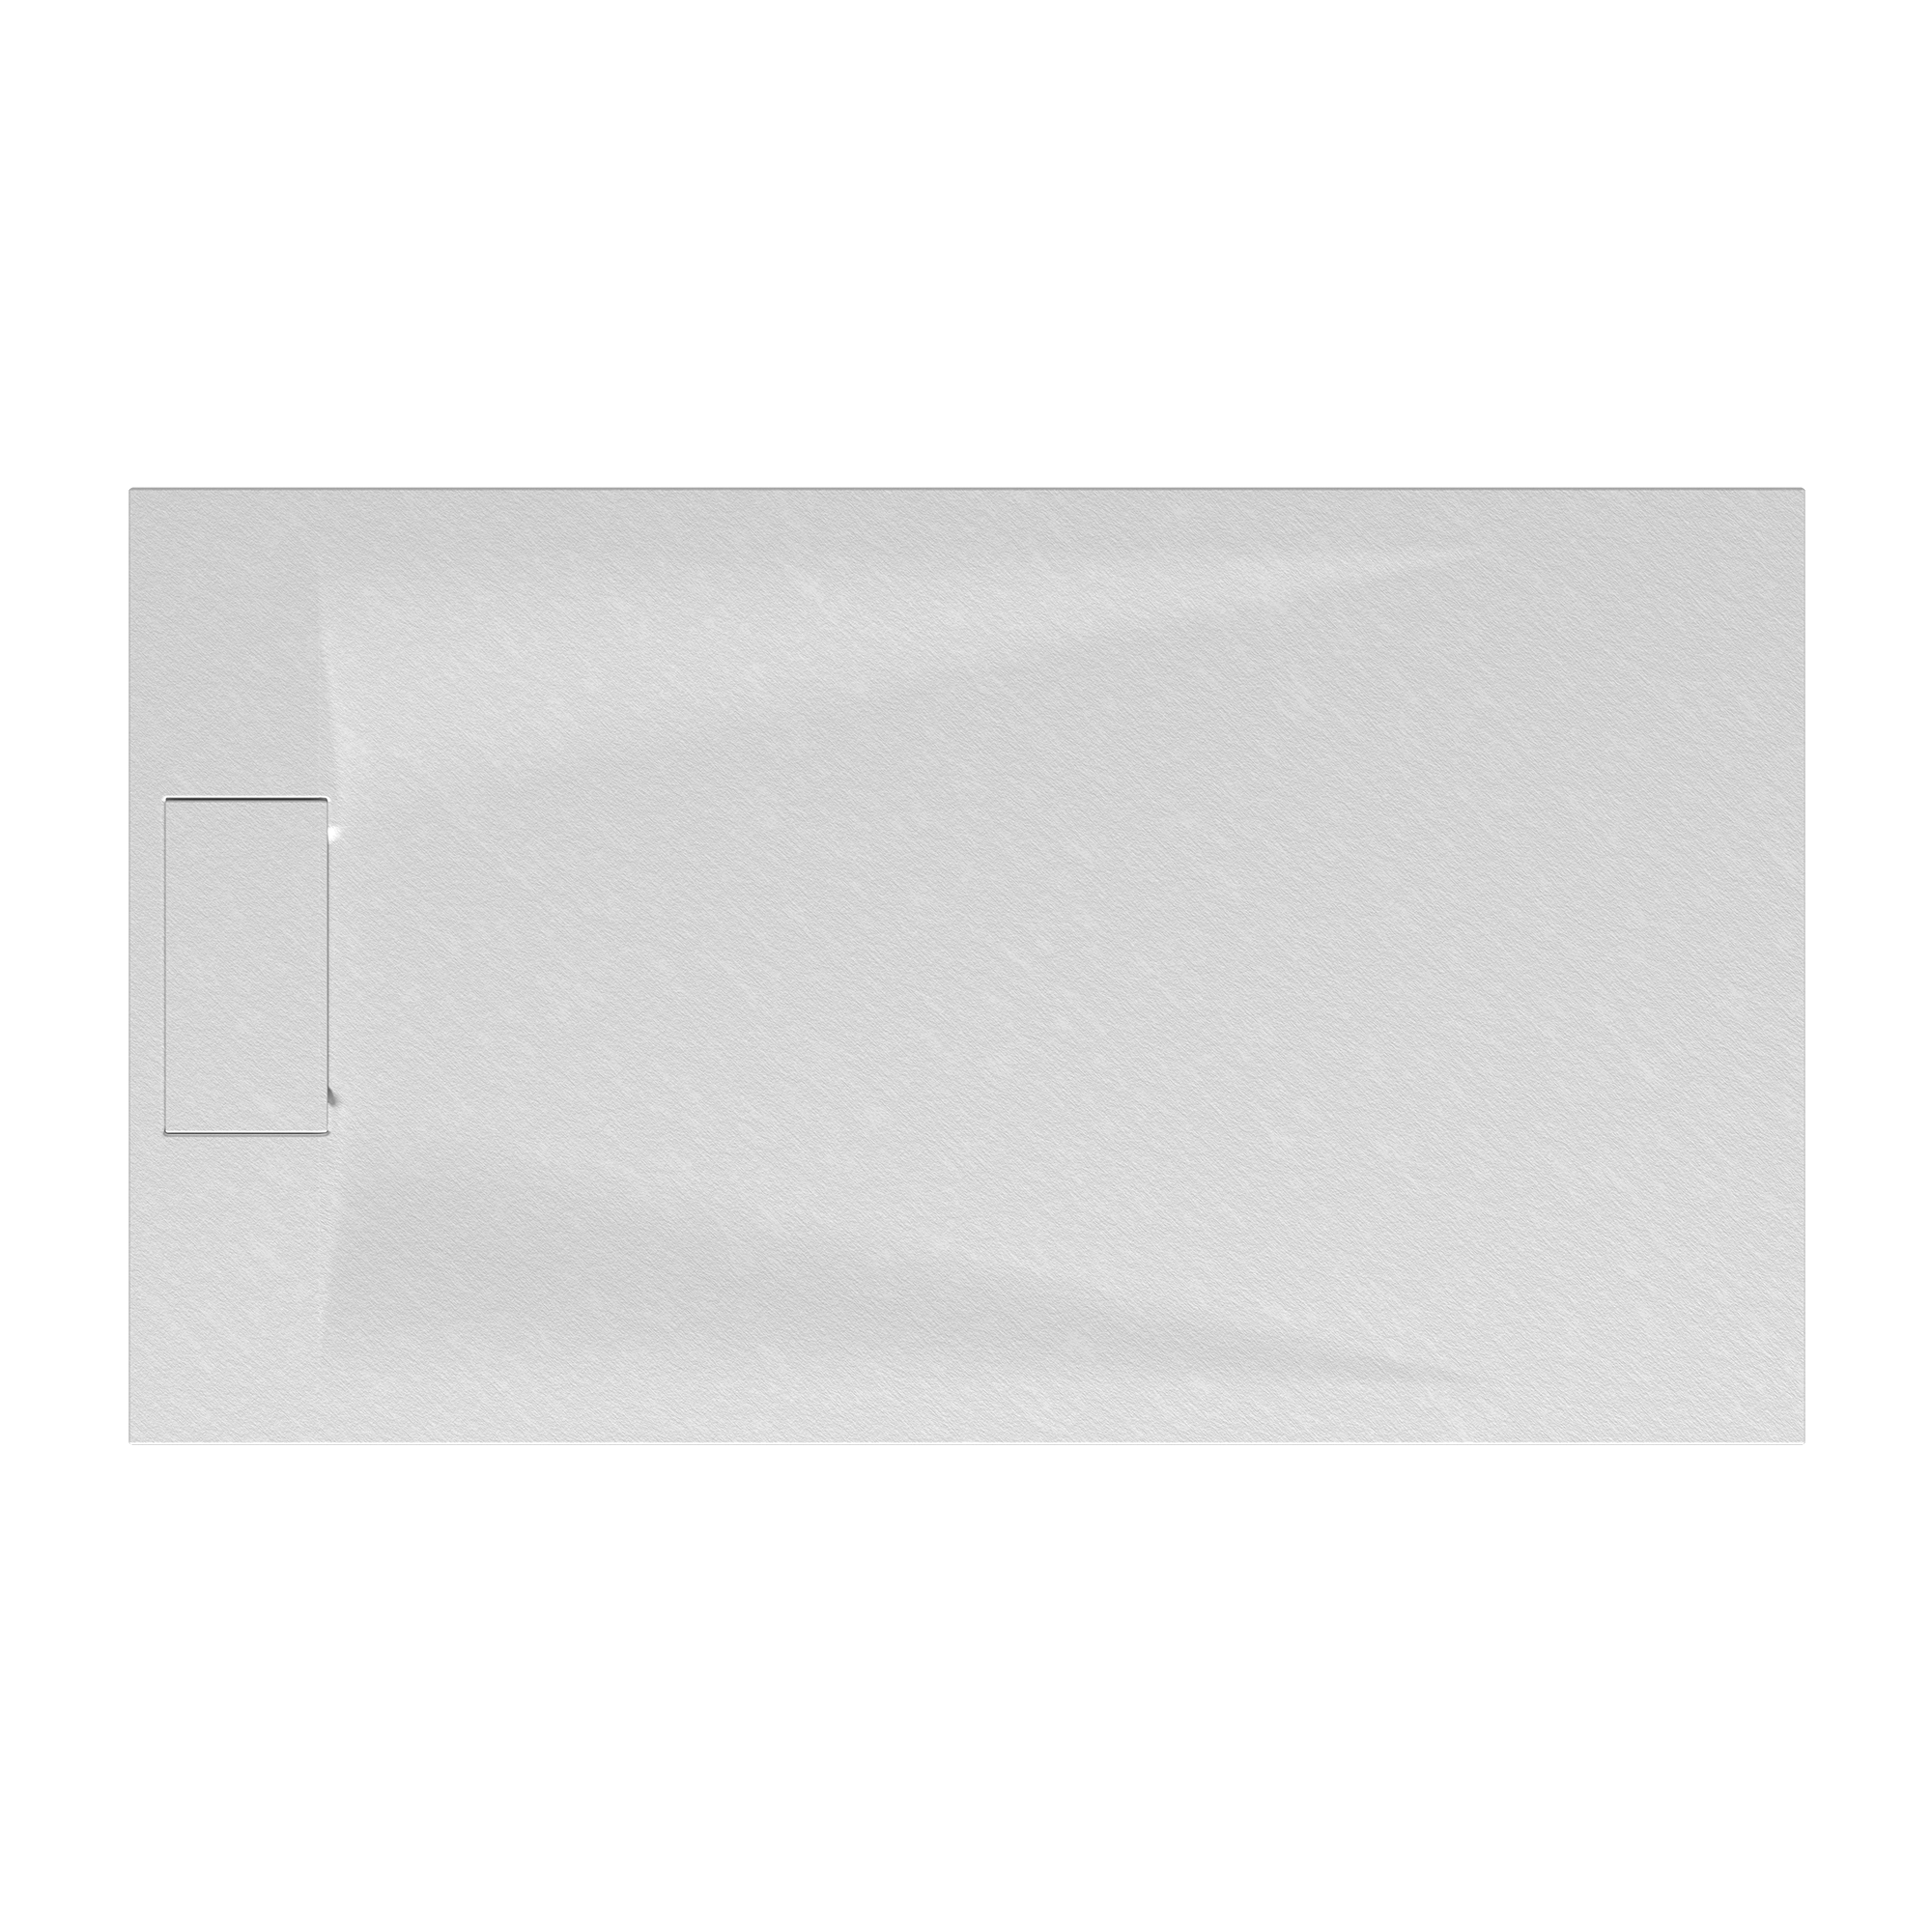 Duschwanne 'Lite Line' Steinoptik weiß 80 x 160 cm + product picture